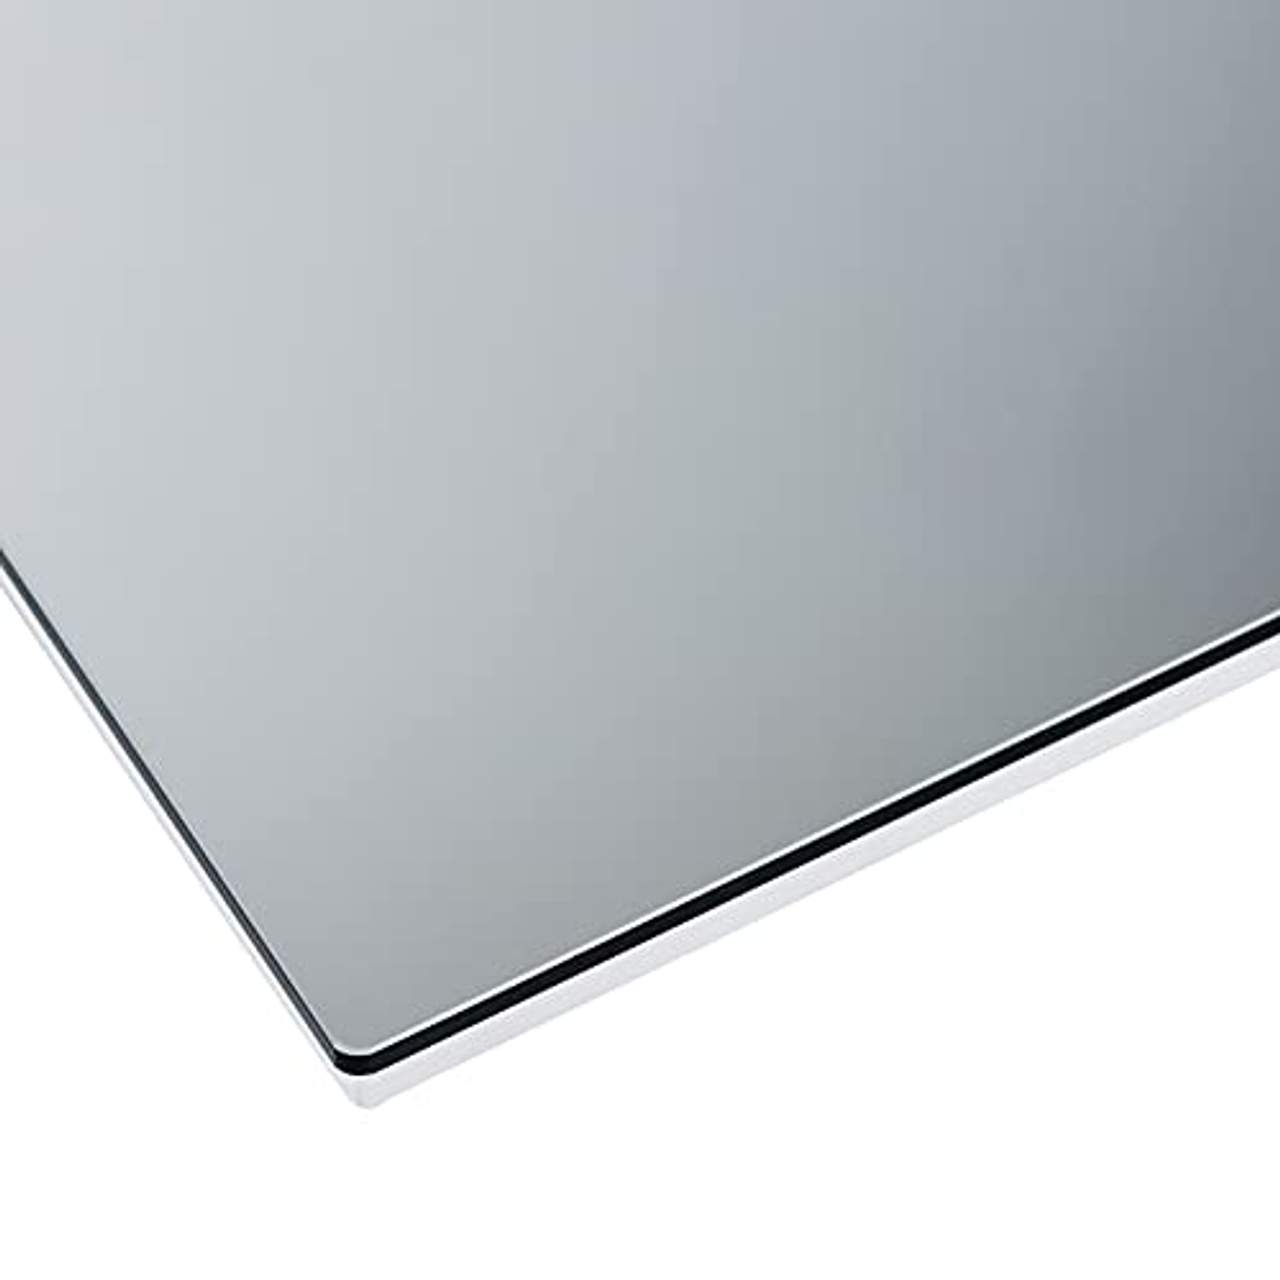 Mi-Heat Sundirect MD650-Plus Badezimmer Infrarot Heizspiegel 60x120cm